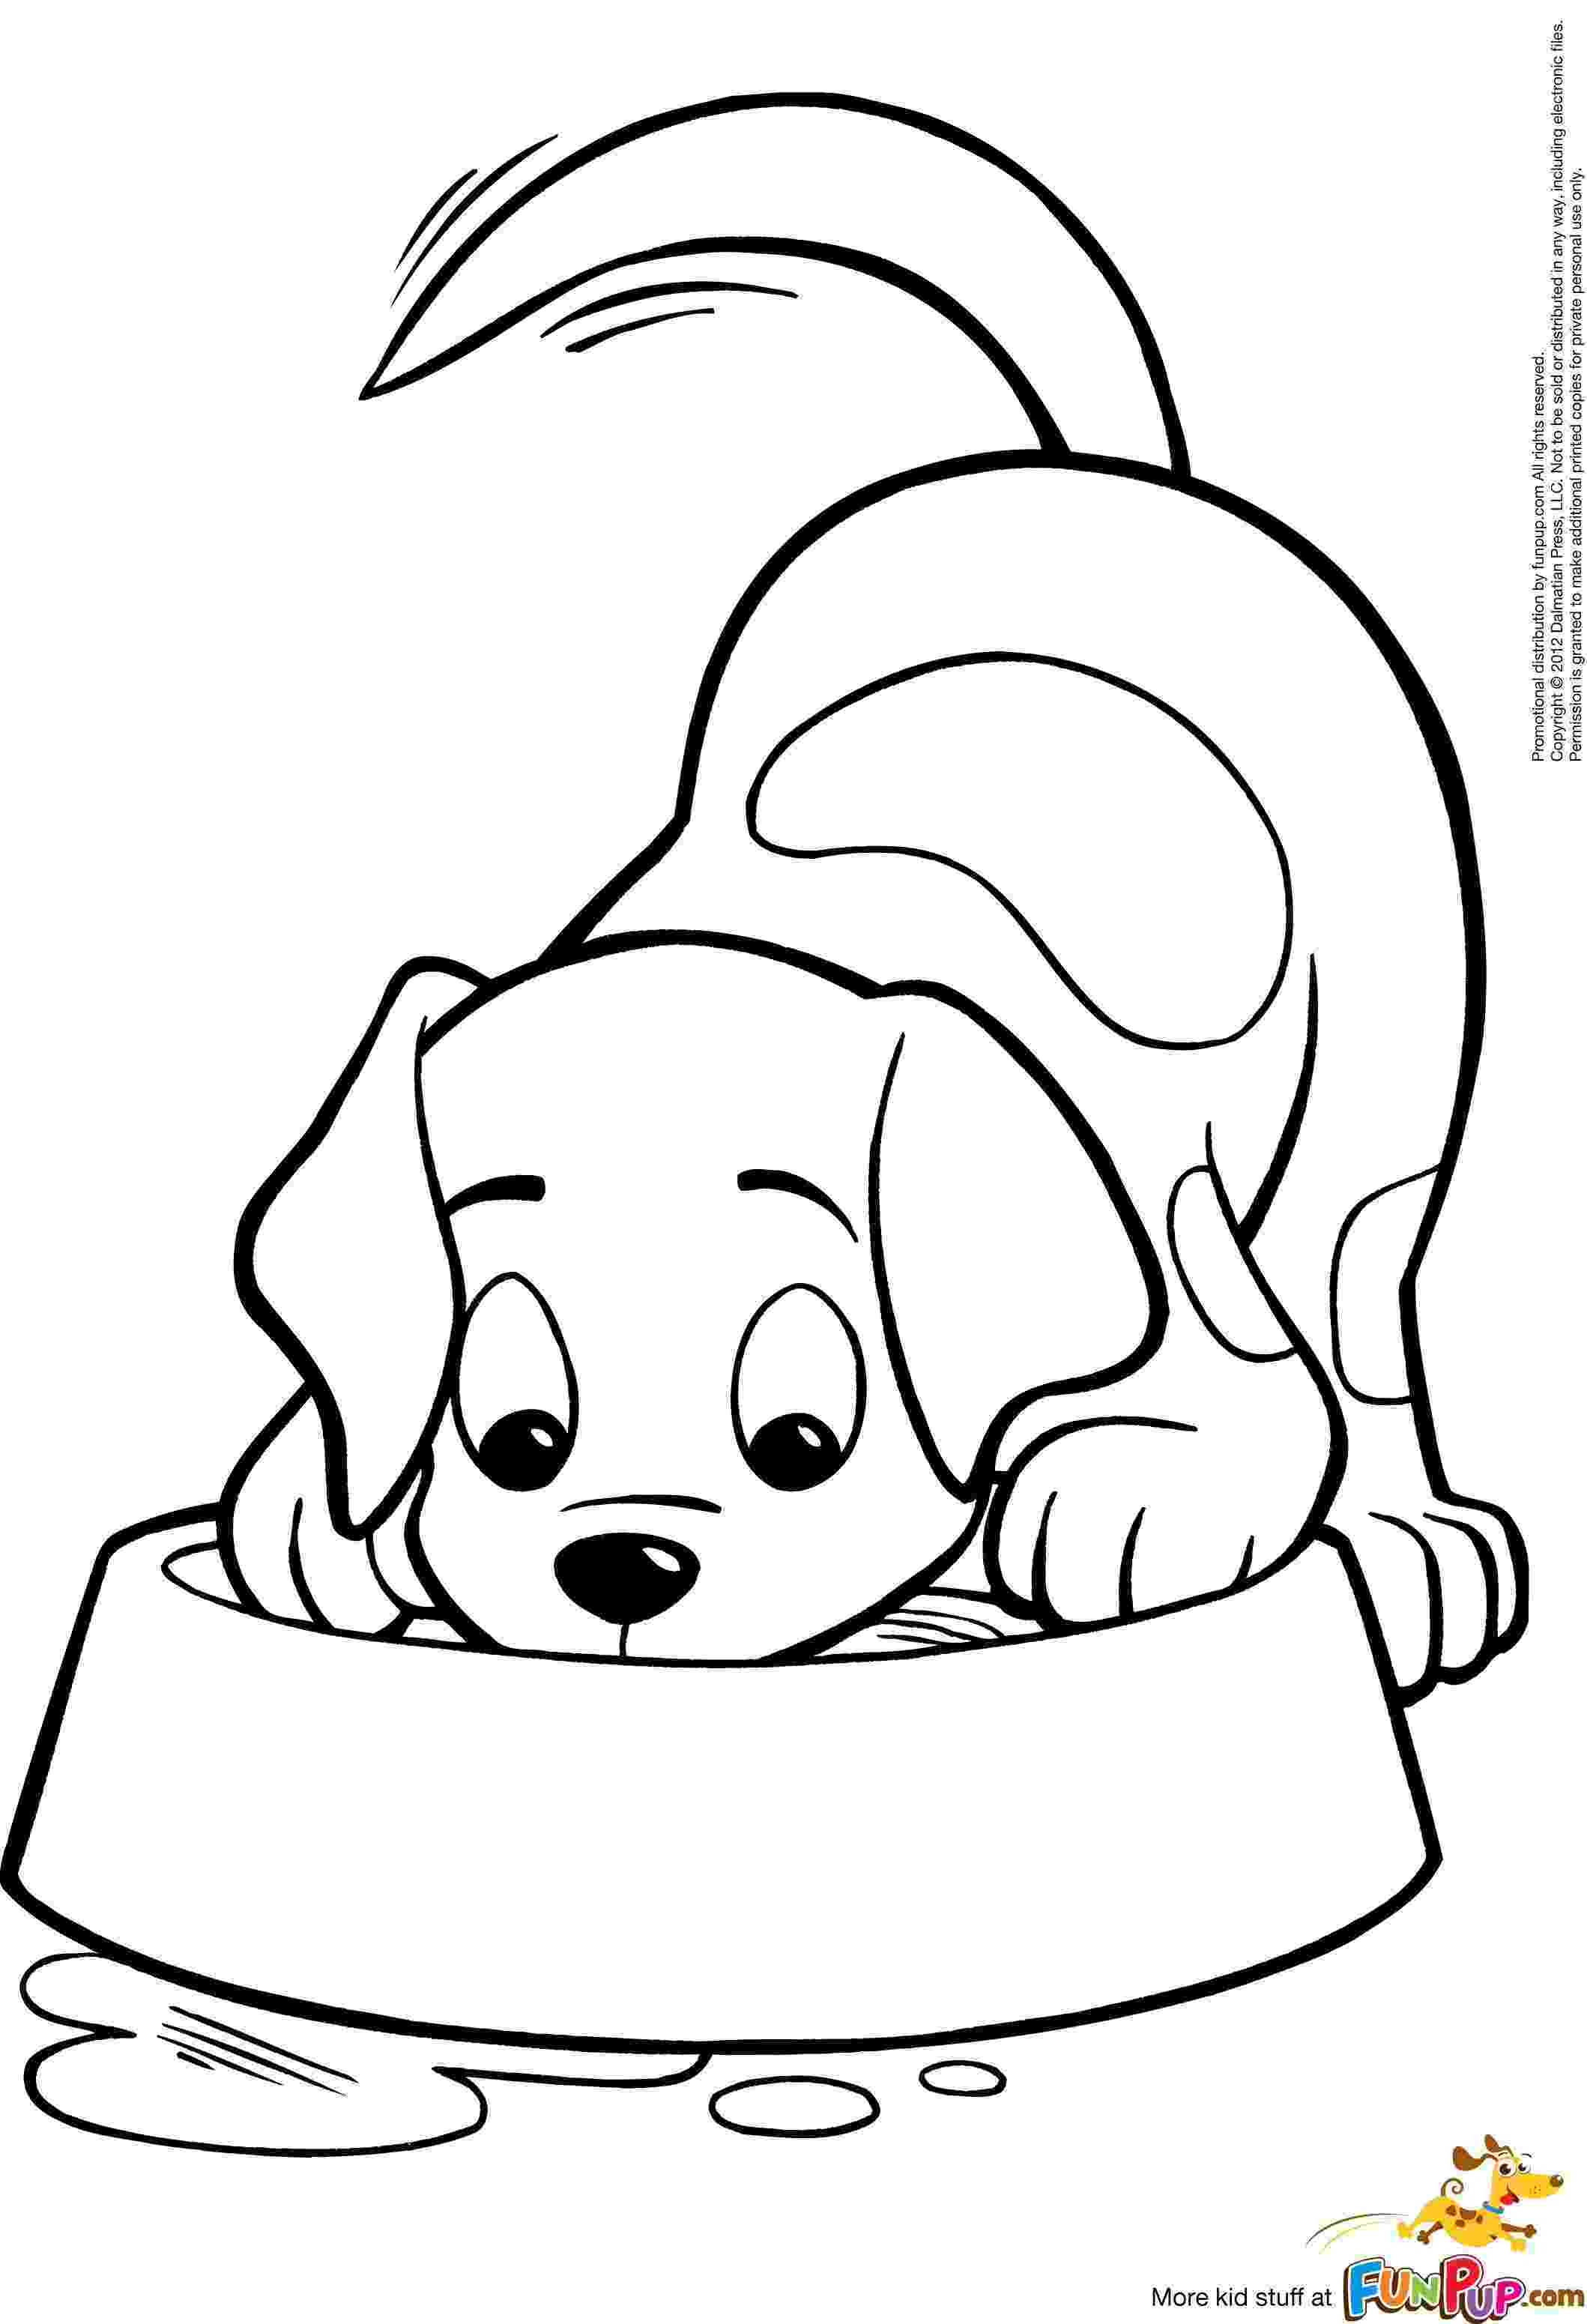 free dog coloring sheets free dog coloring sheets coloring sheets free dog 